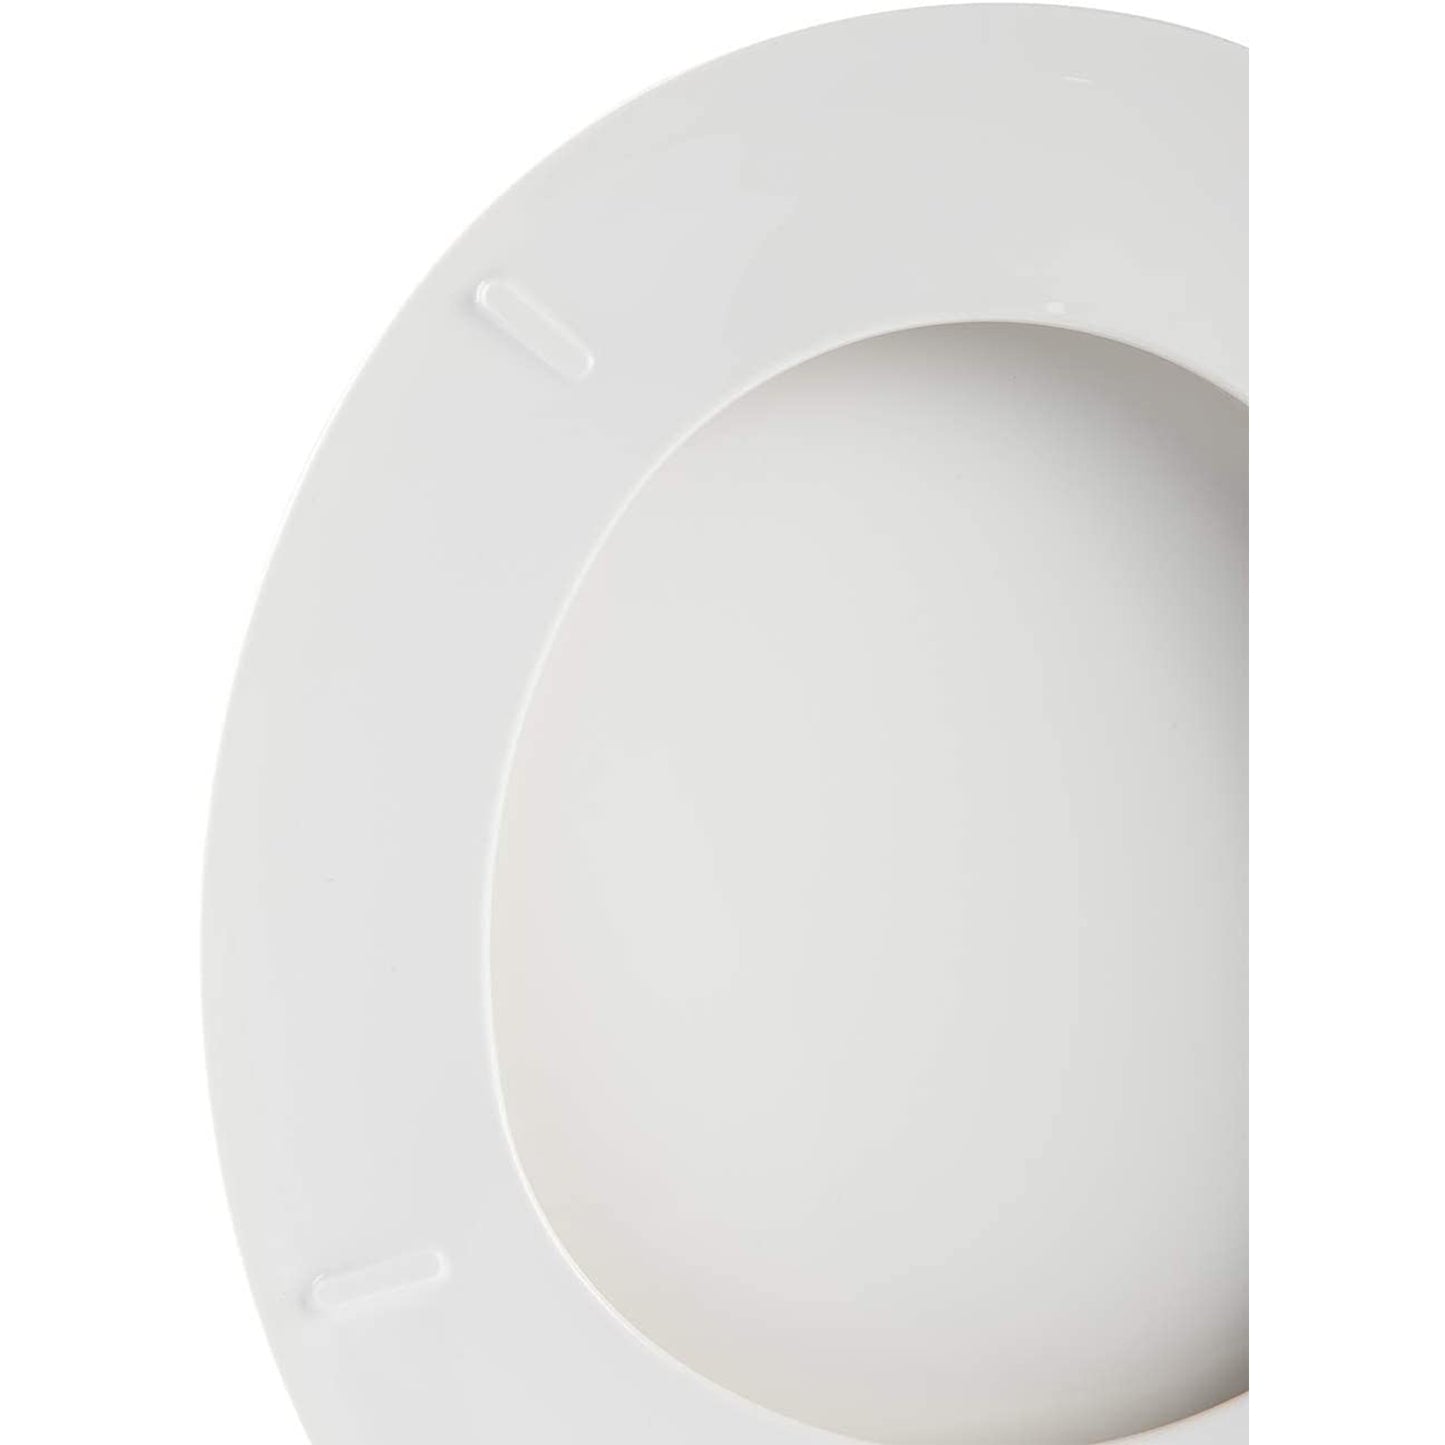 Hausen Economy Toilet Seat, Round, White, 2-Pack